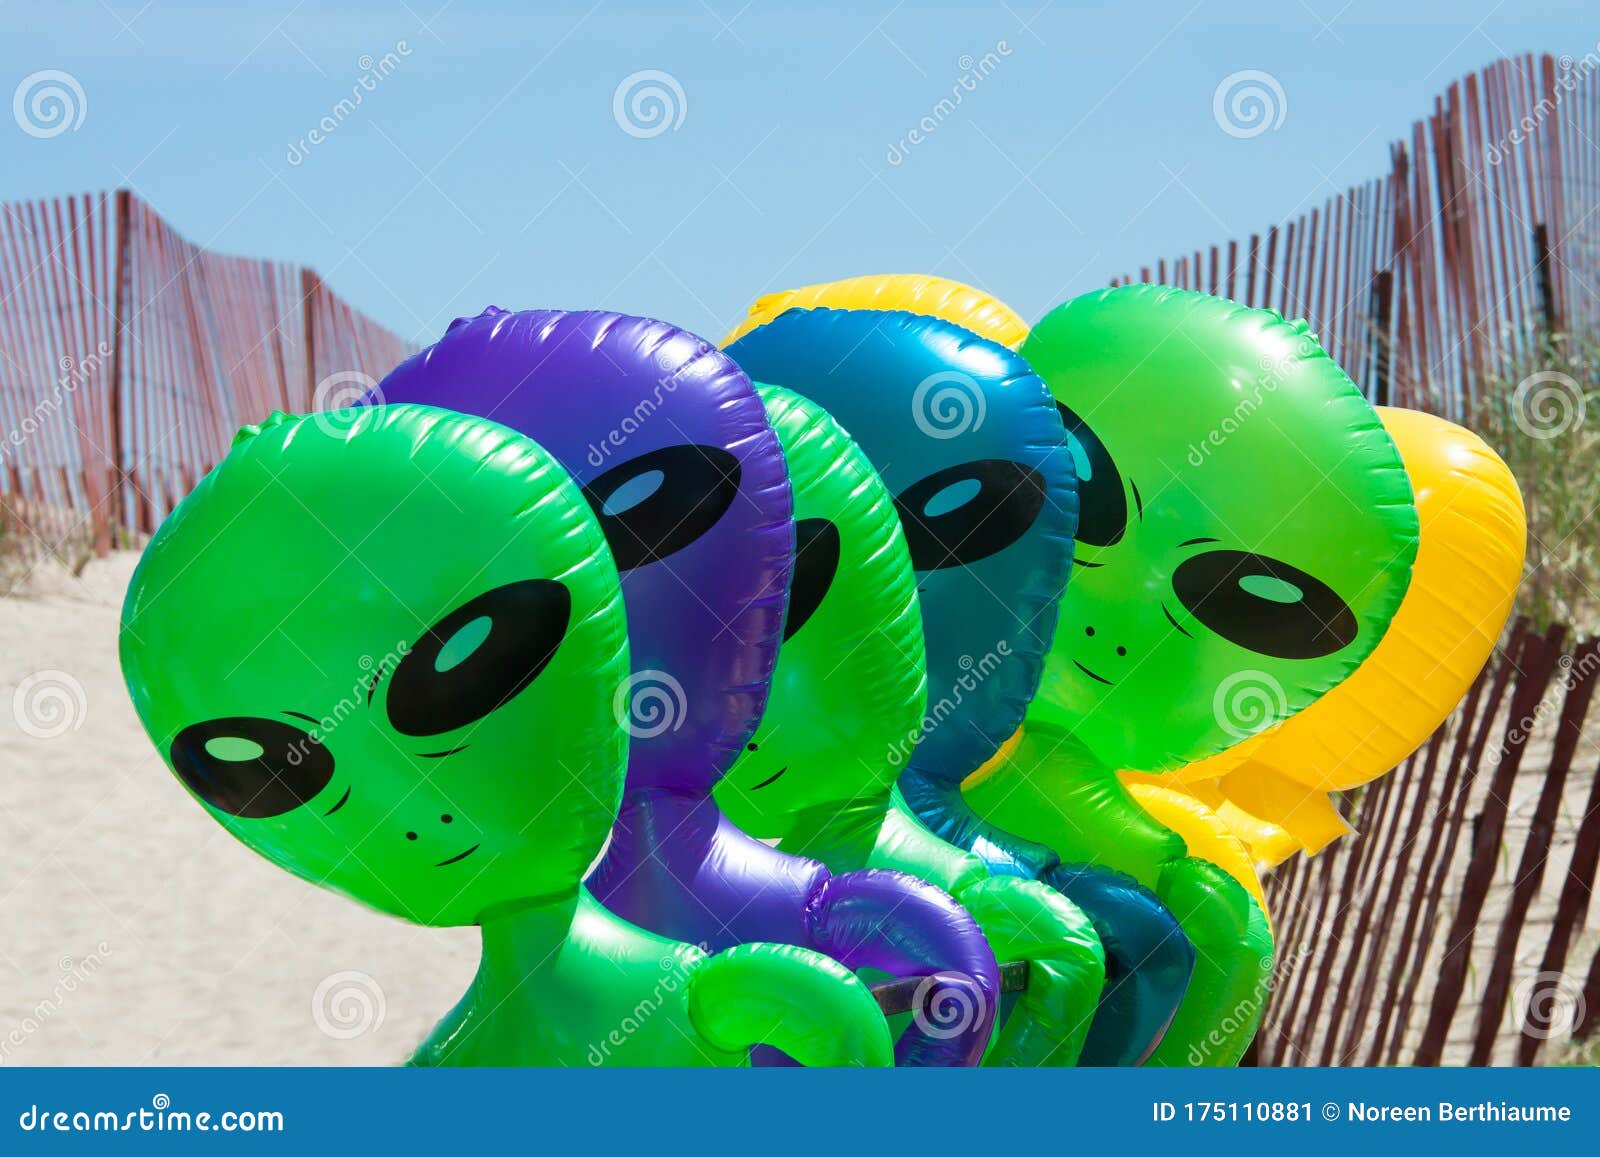 Globos Alienígenas En La Playa Imagen de archivo - Imagen de cerca, caras:  175110881